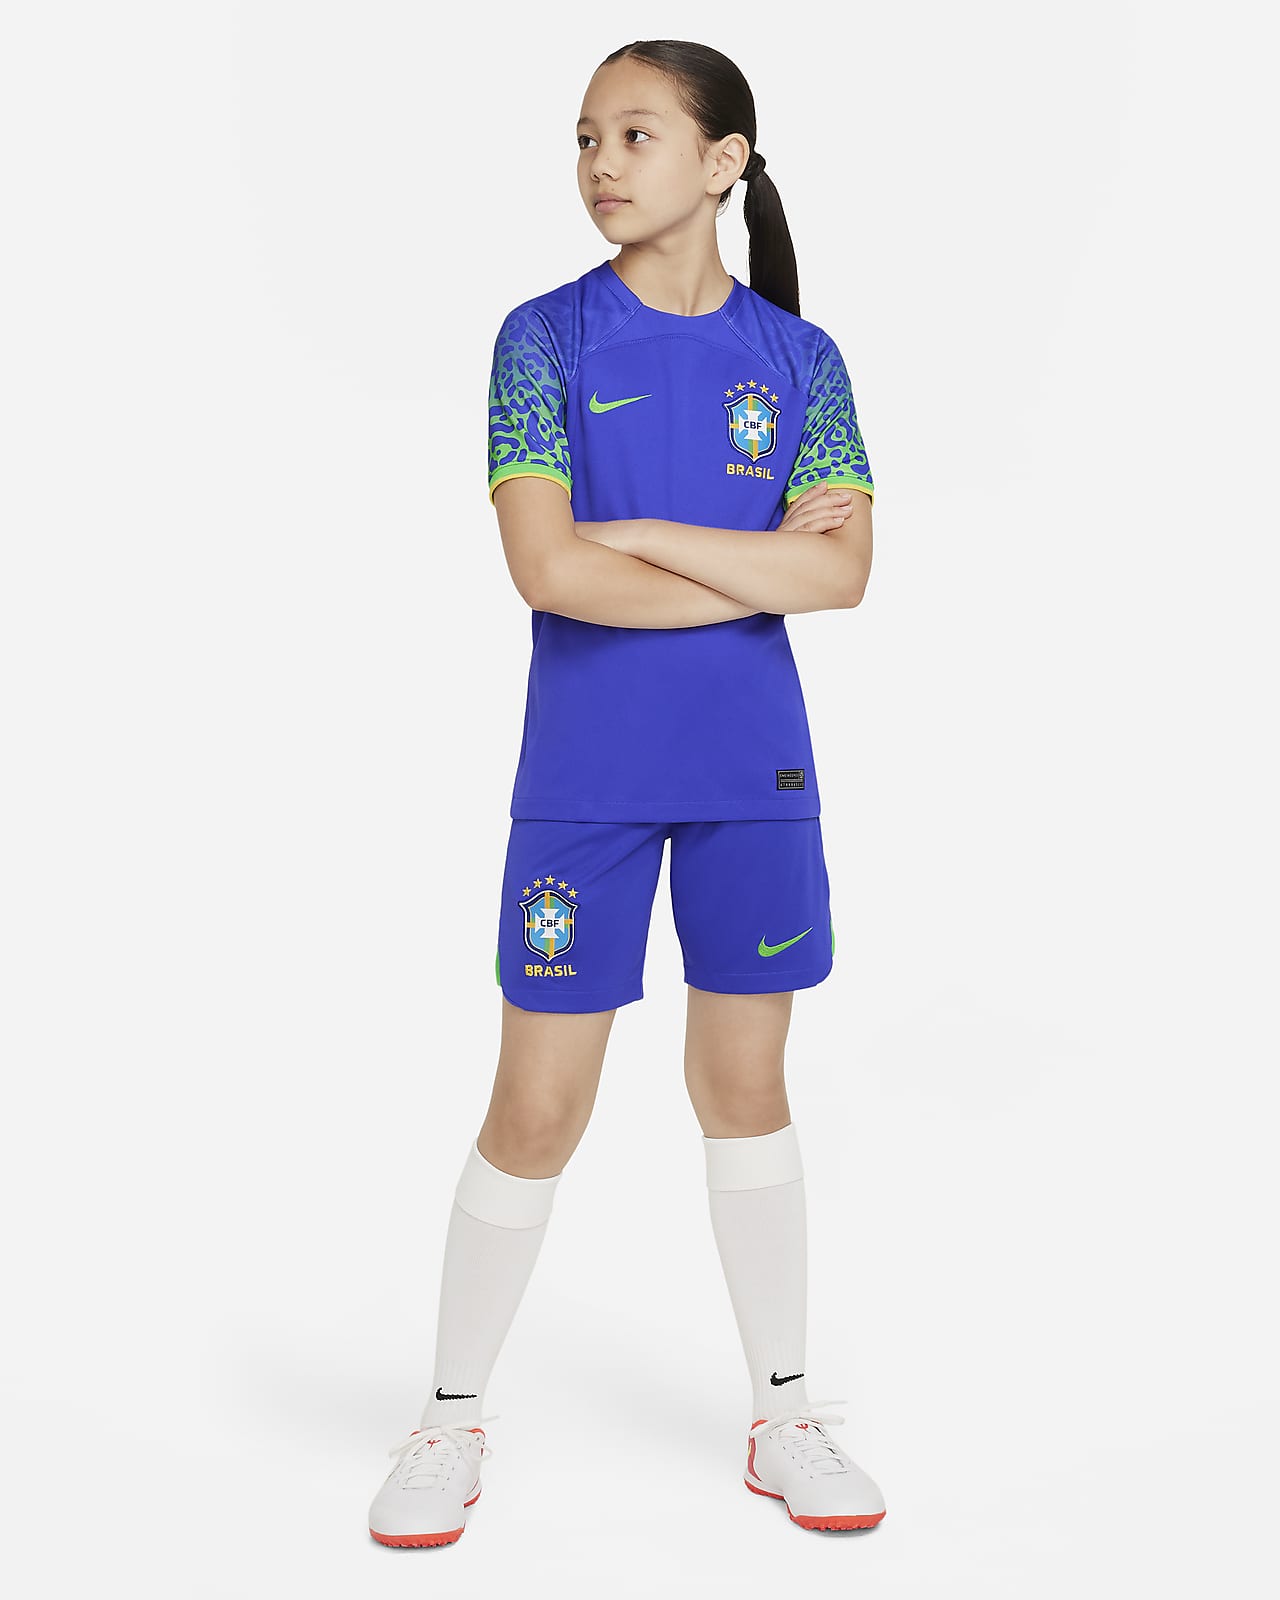 Nike, Shirts, Brasil Brazil Home Soccer Jersey 28 Size L